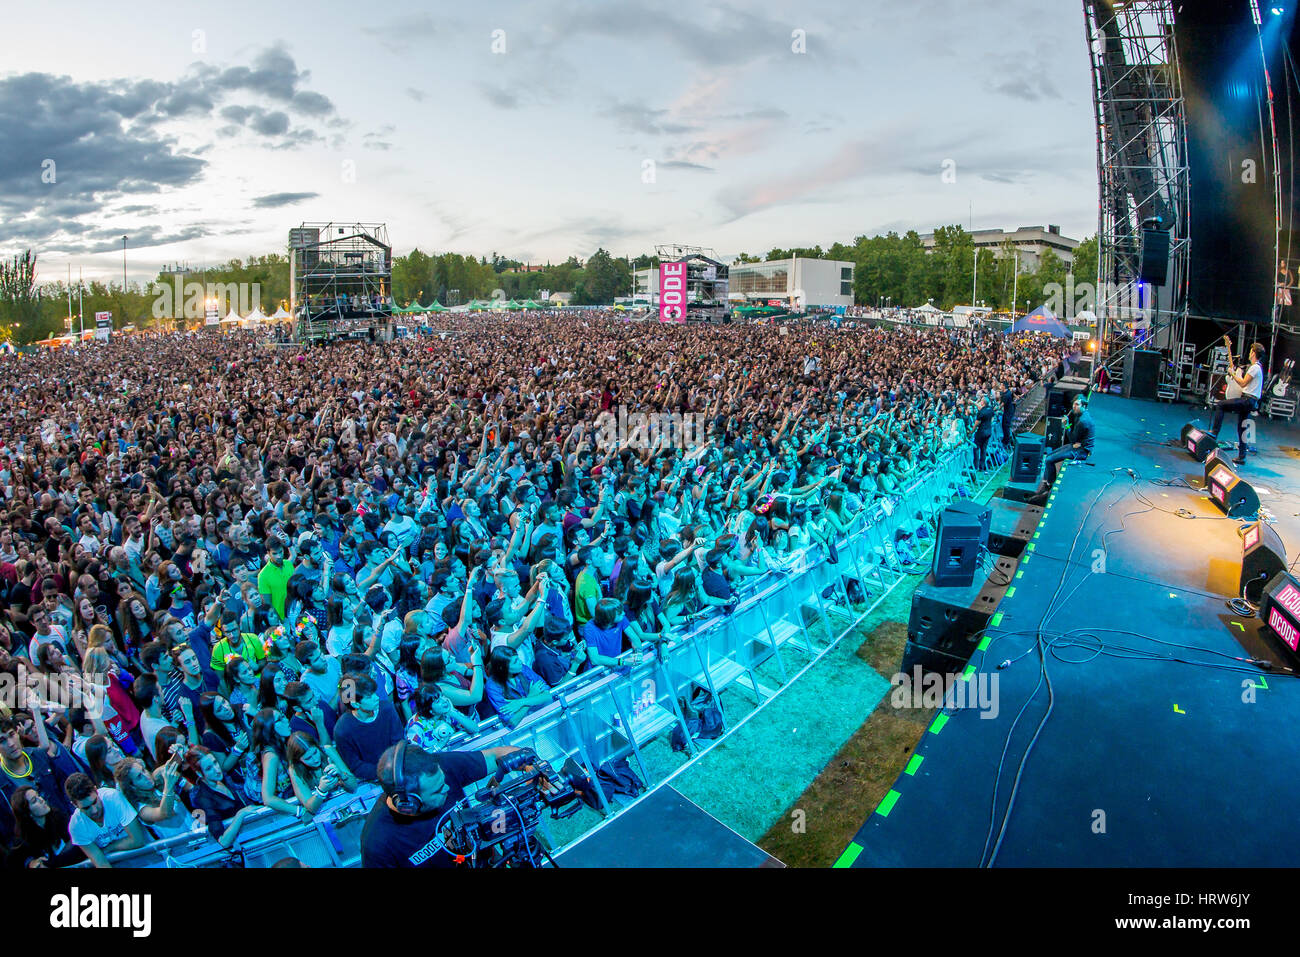 MADRID - SEP 12: Menge in einem Konzert am Dcode Festival am 12. September 2015 in Madrid, Spanien. Stockfoto